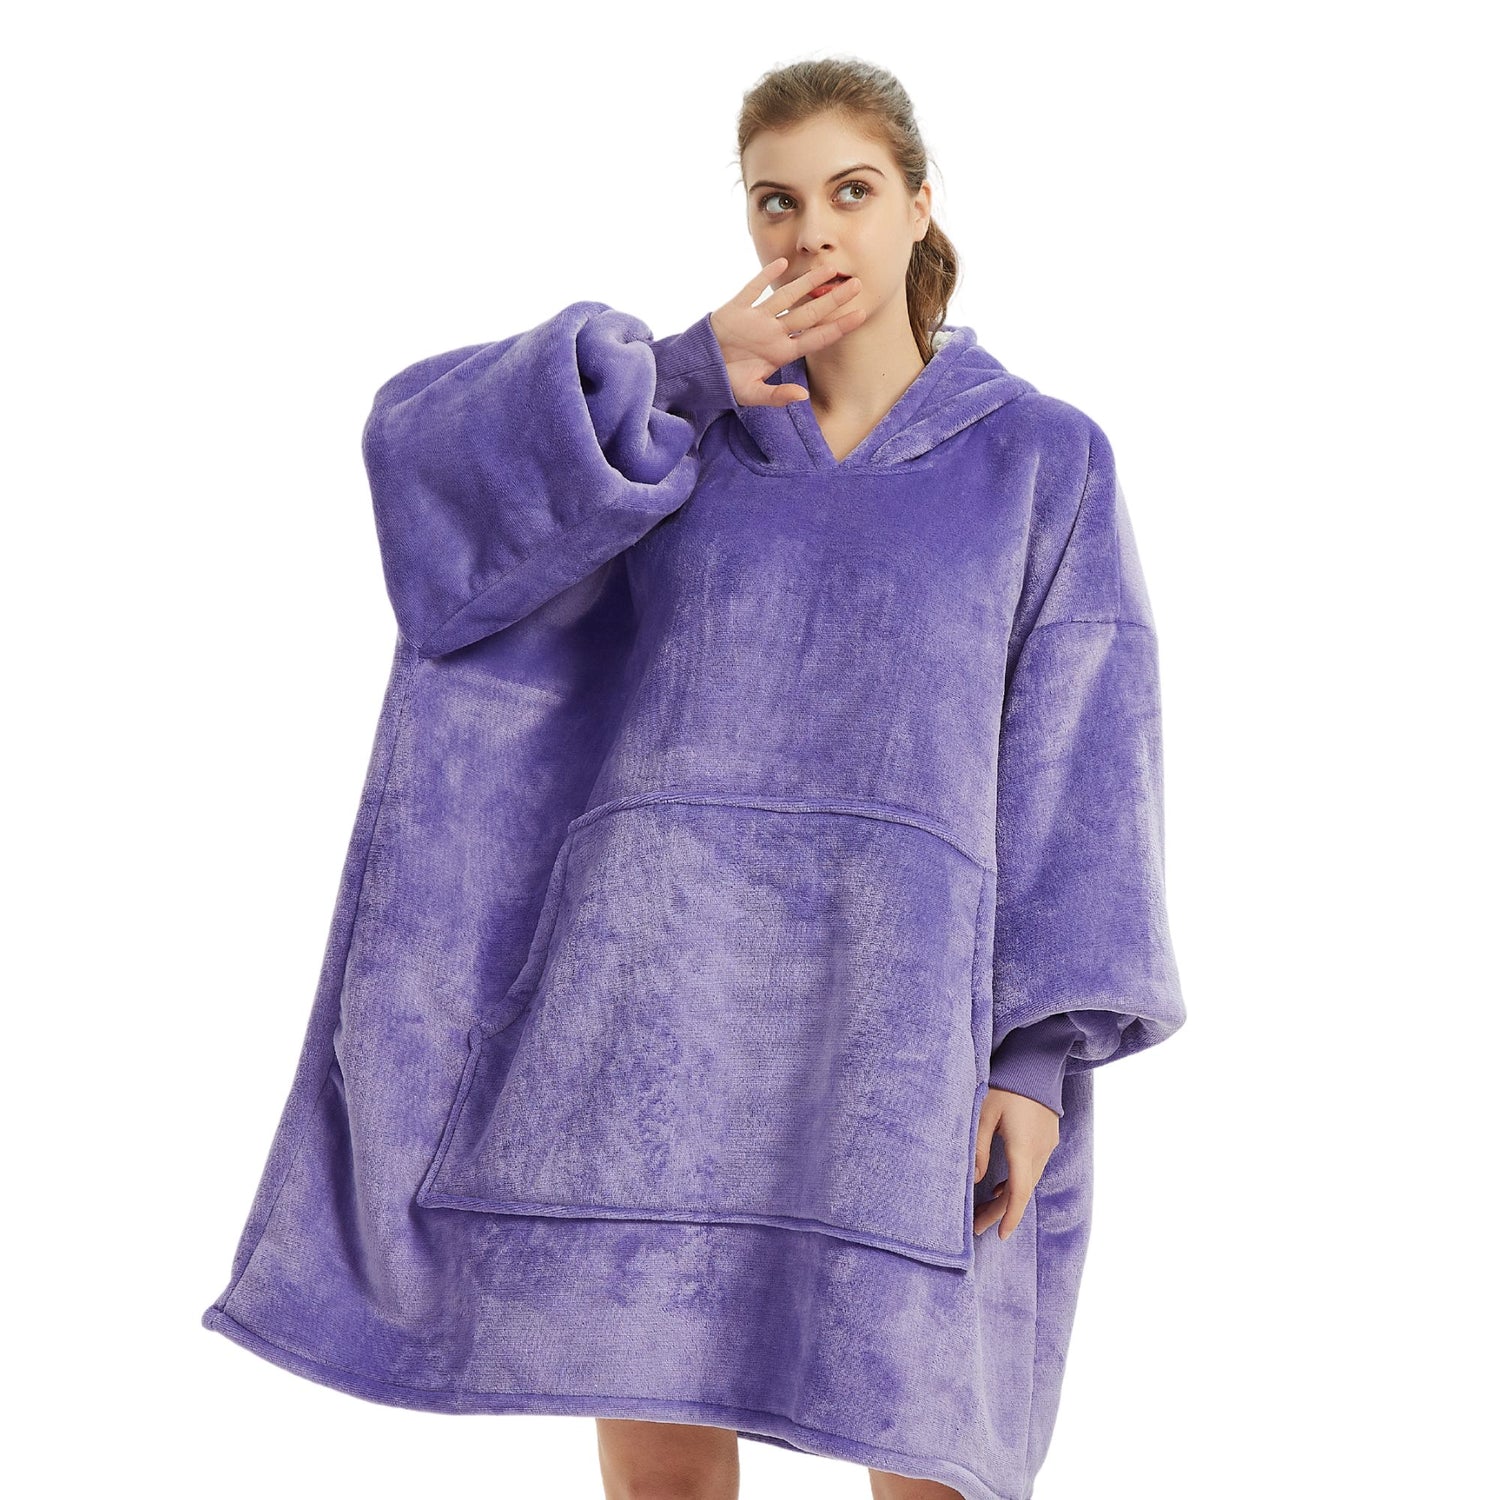 Comprar Sudadera con capucha tipo manta Azul marino? Calidad y ahorro